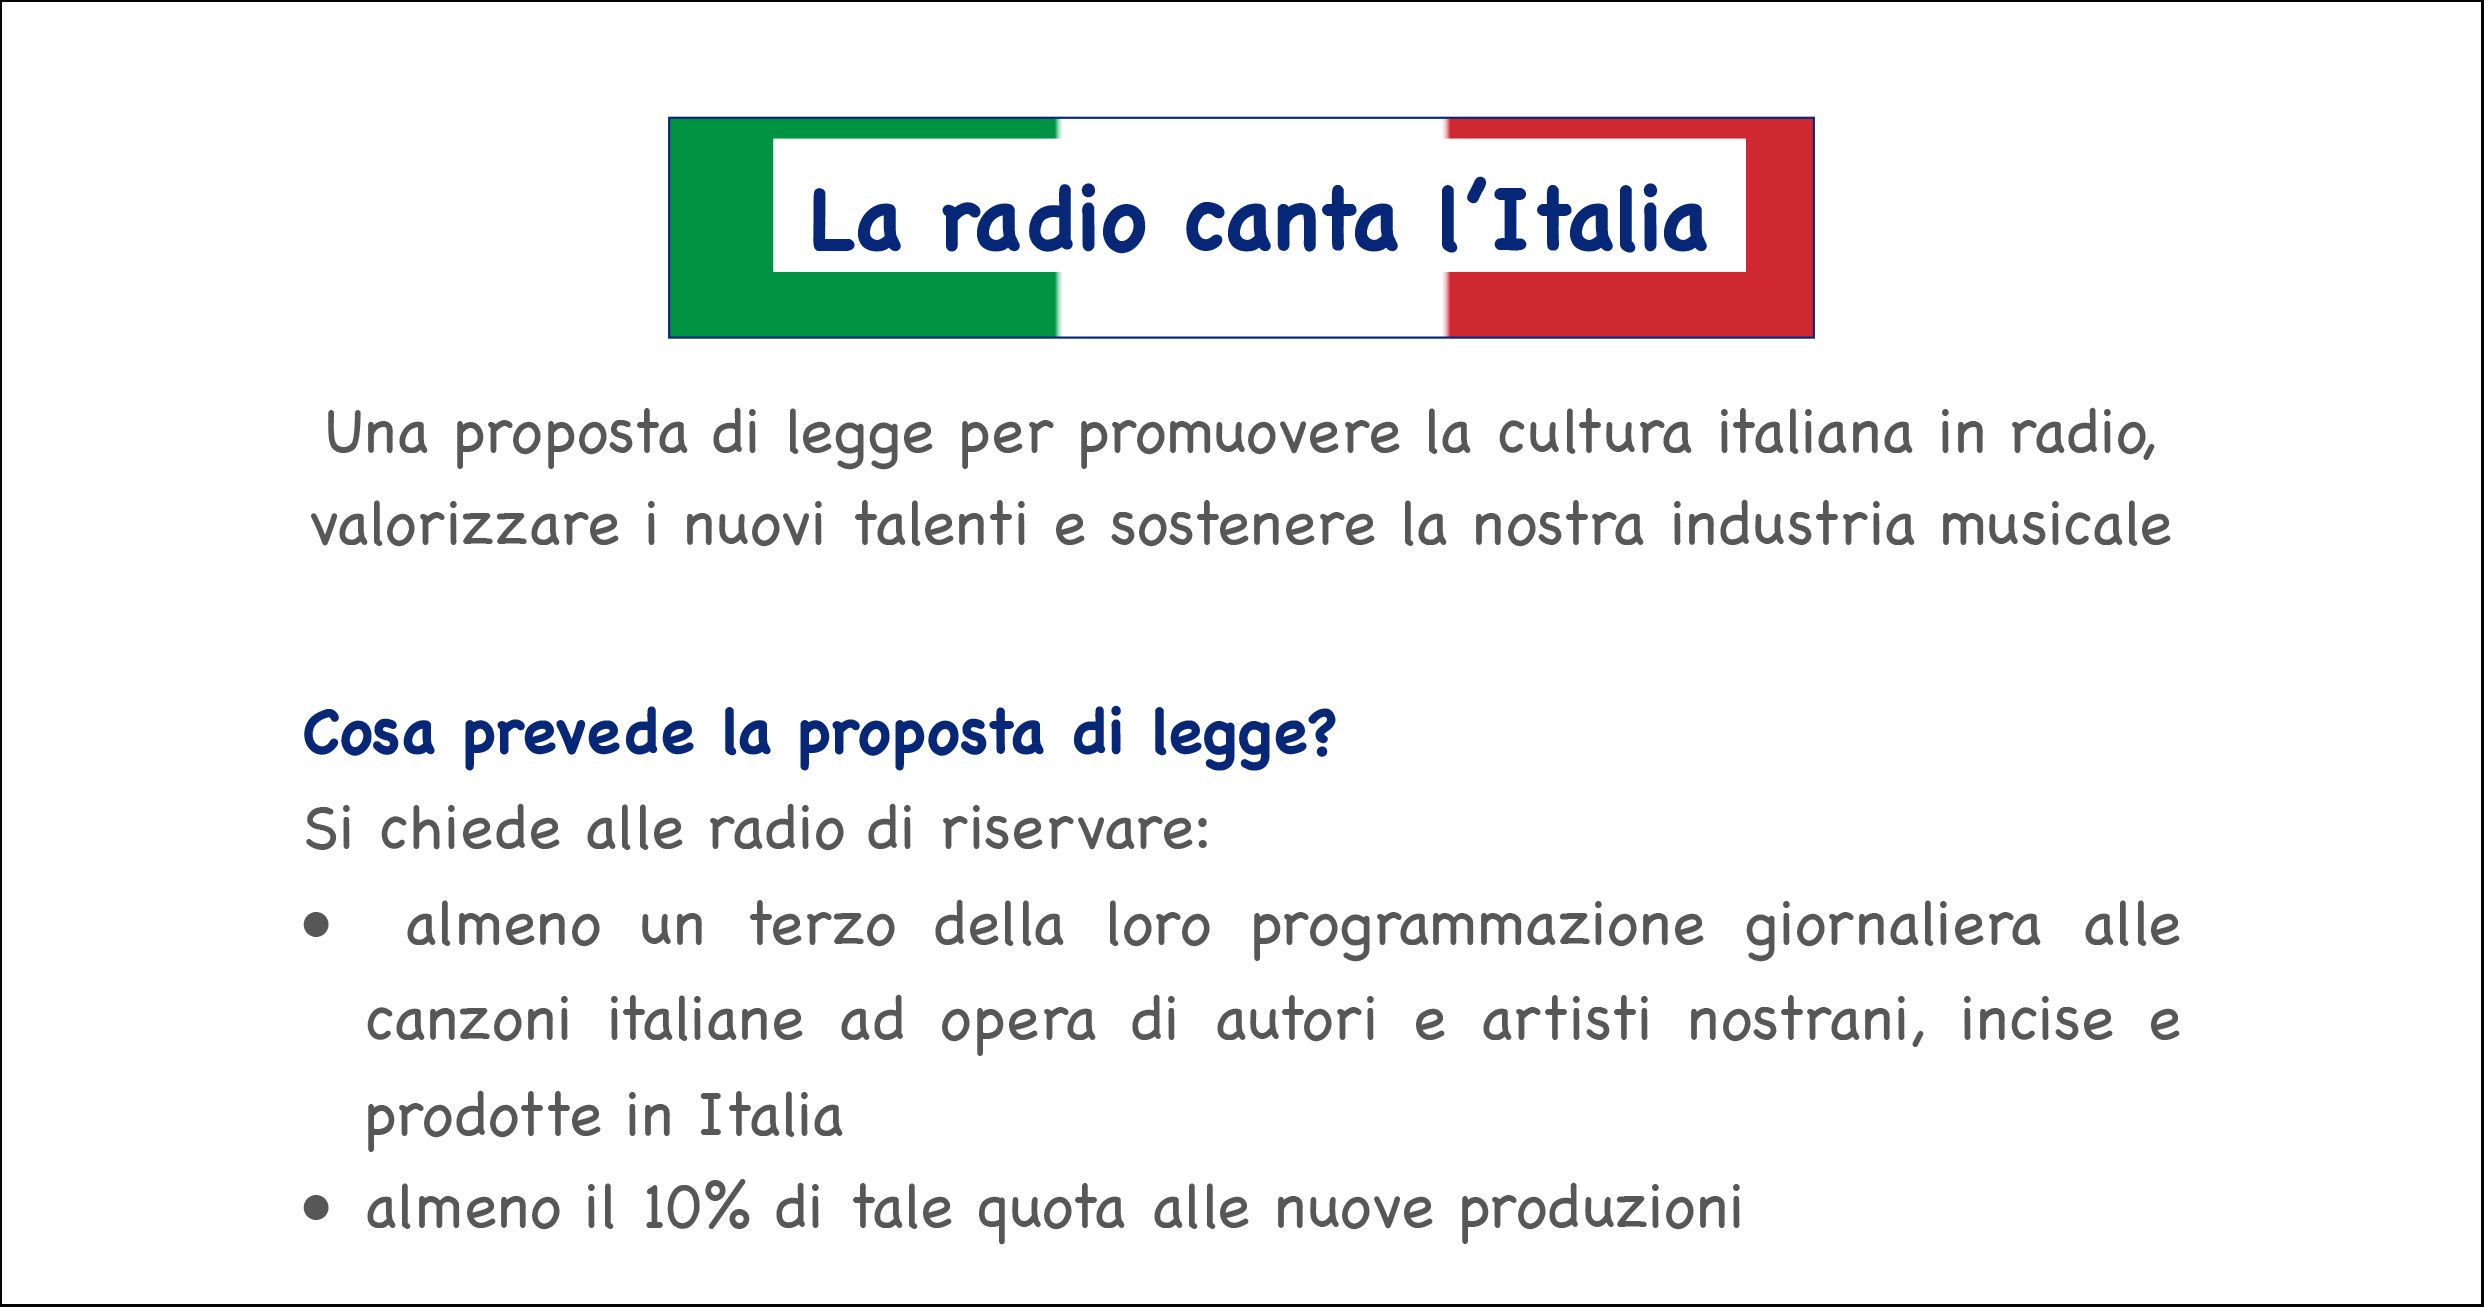 La radio canta l'Italia - SIAE - quote radio